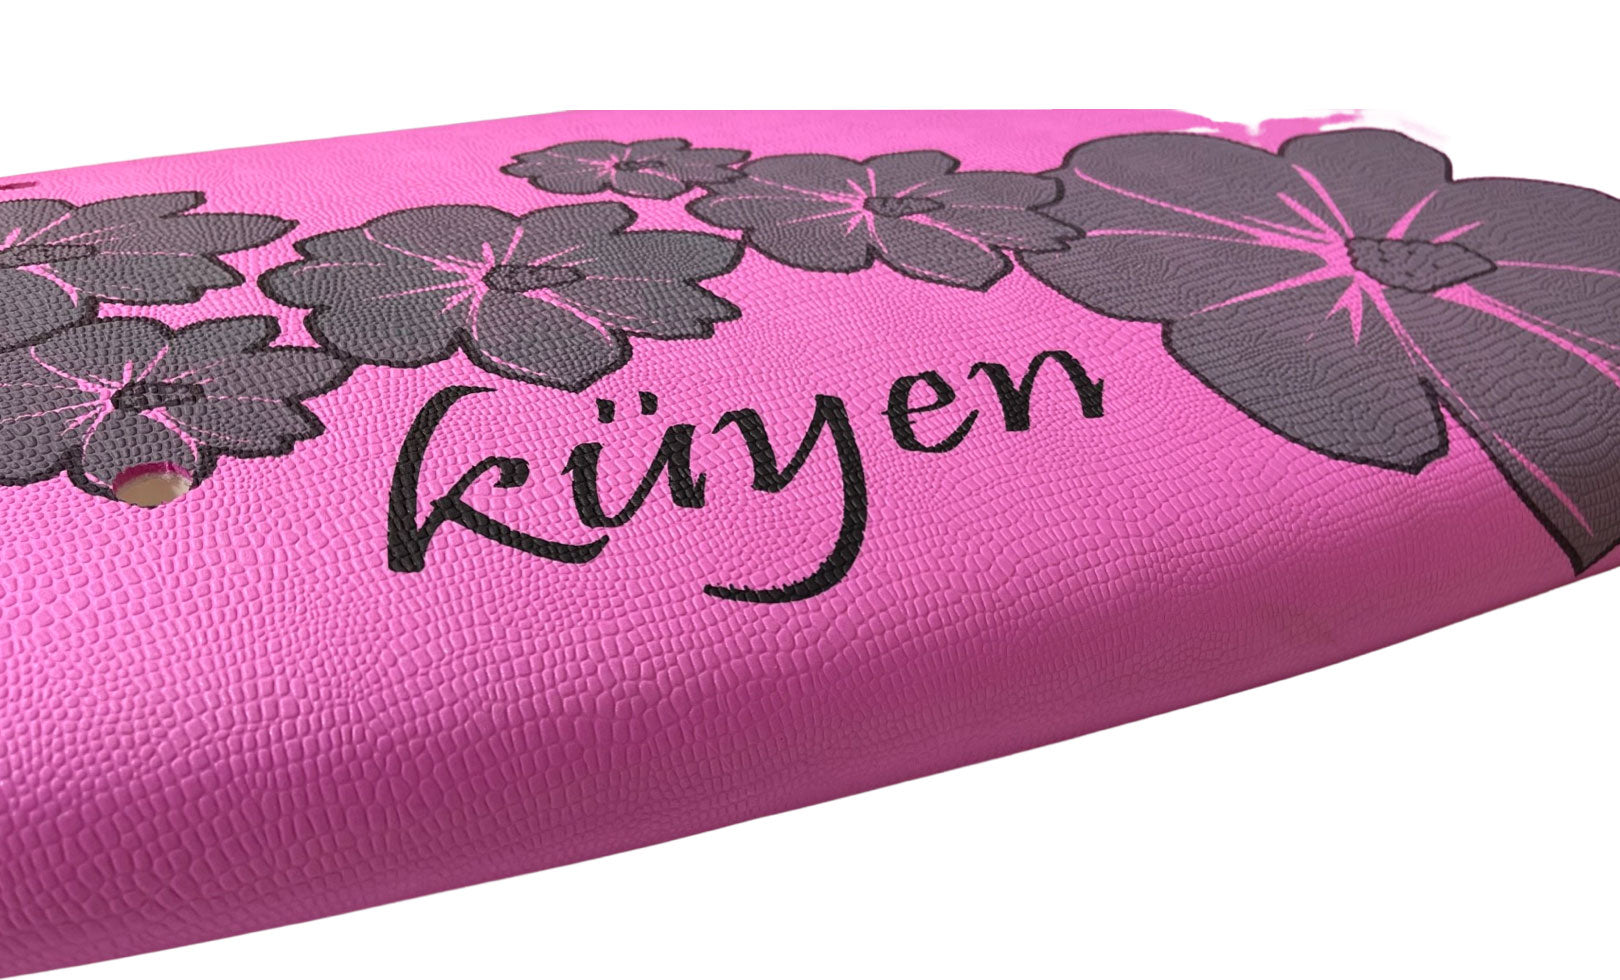 Softboard Küyen 6’8” Pink